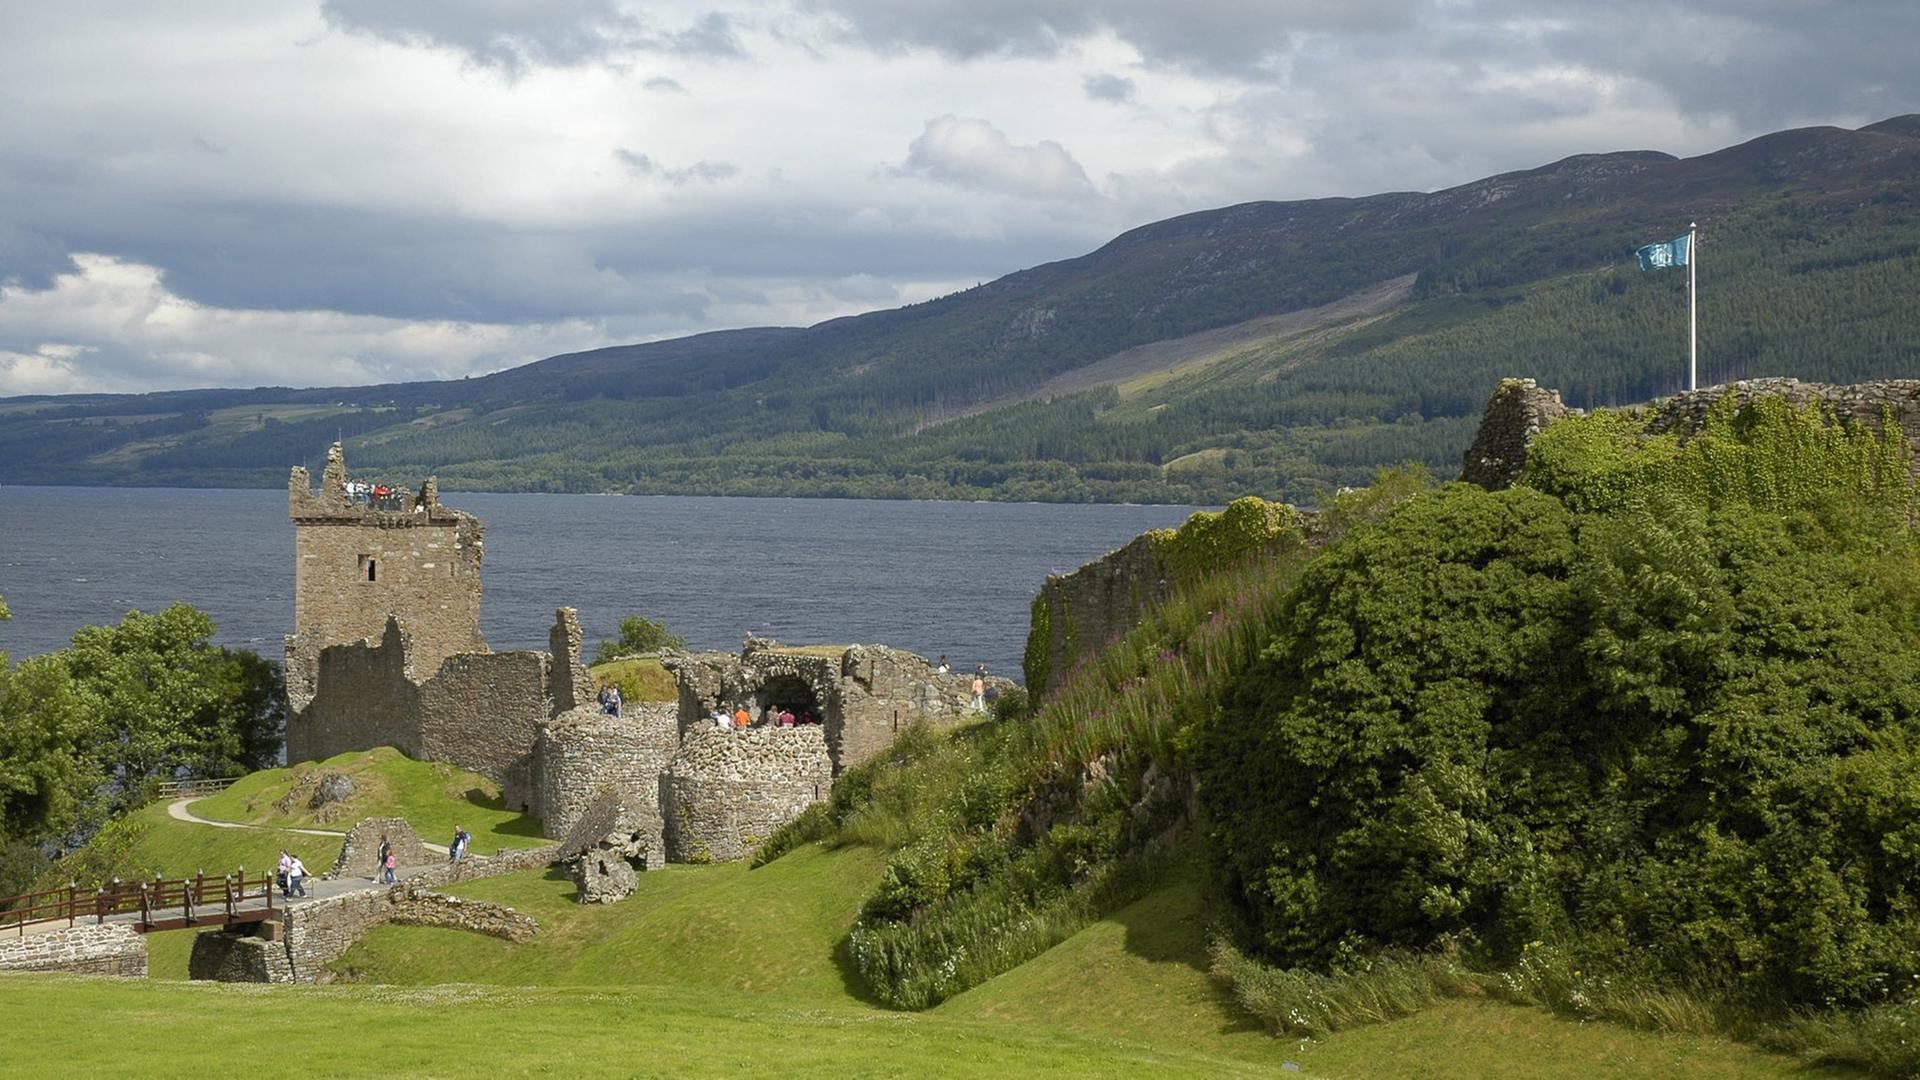 Blick auf die Ruine des Urquhart Castle am Loch Ness in den Schottischen Highlands gelegen, Blickrichtung Osten vom Highway A62 aus gesehen. Aufgenommen am 13.08.2010